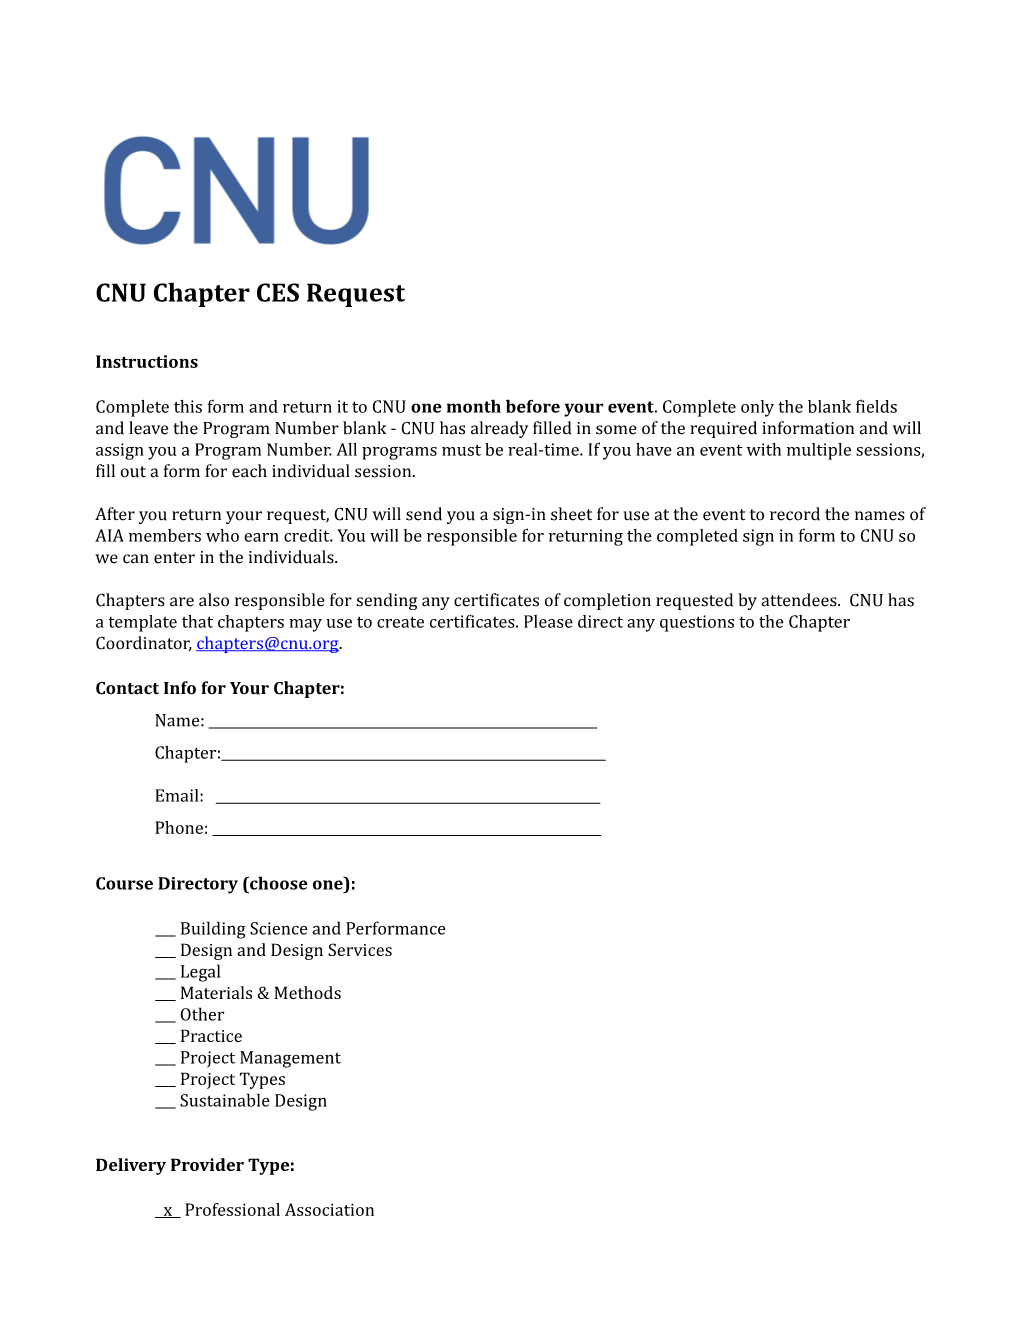 CNU Chapter CES Request